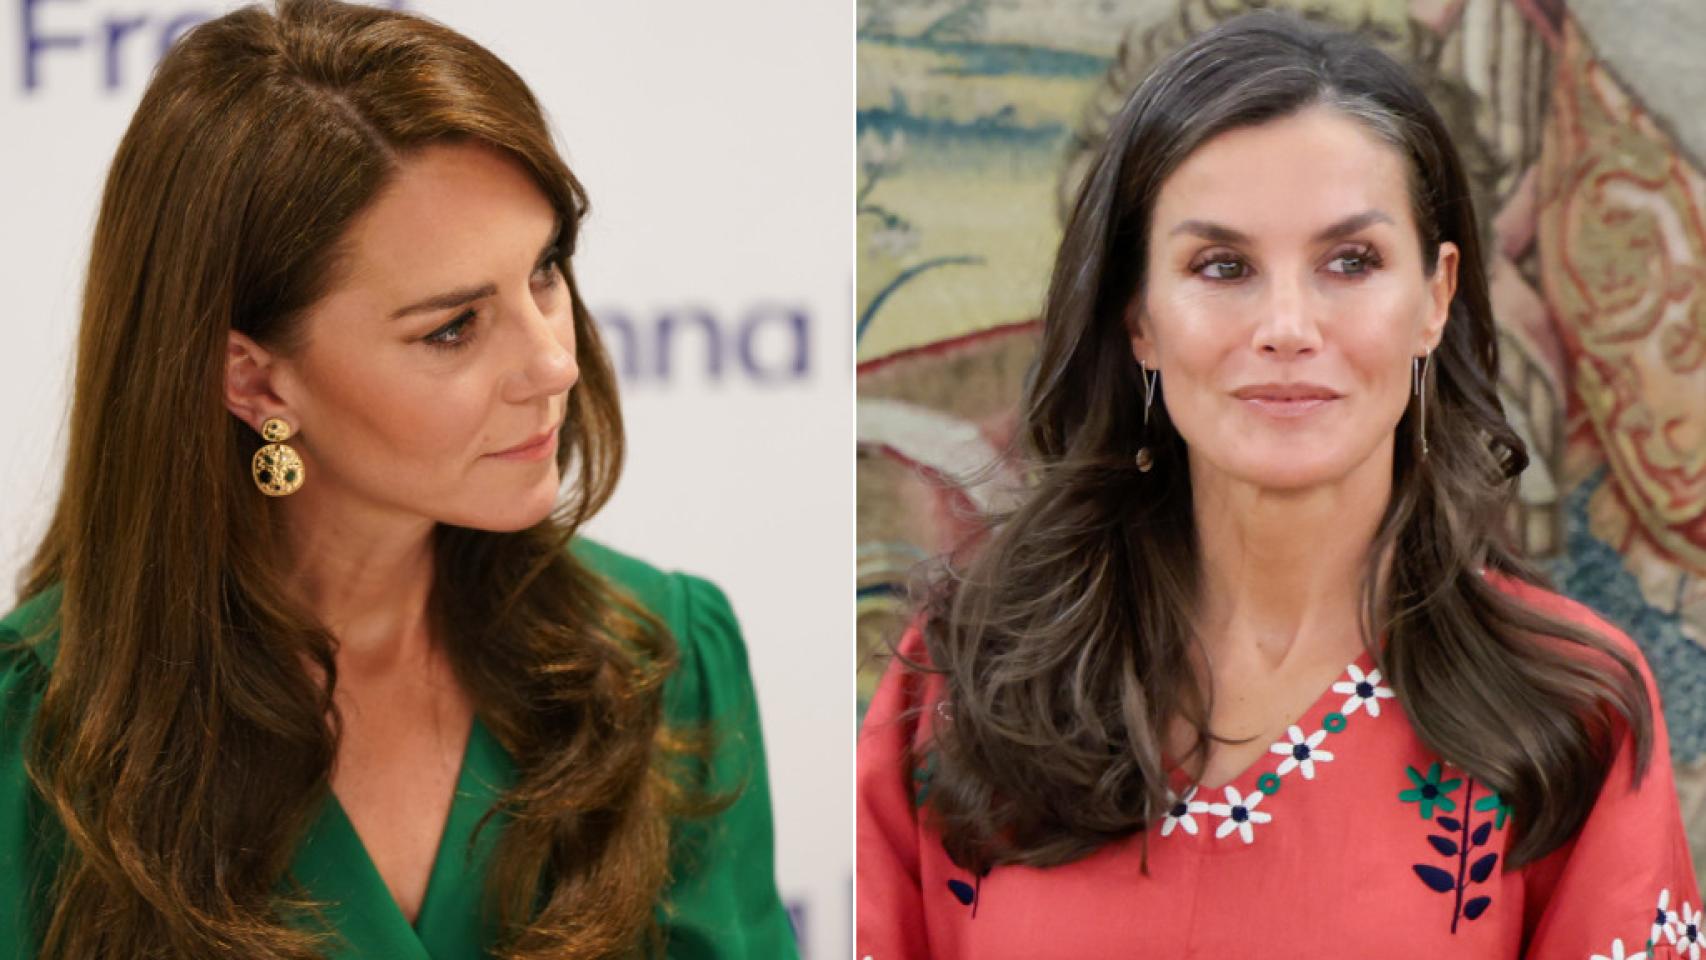 Con su nuevo peinado, según los expertos, la reina Letizia consigue una imagen similar a la de Kate Middleton.